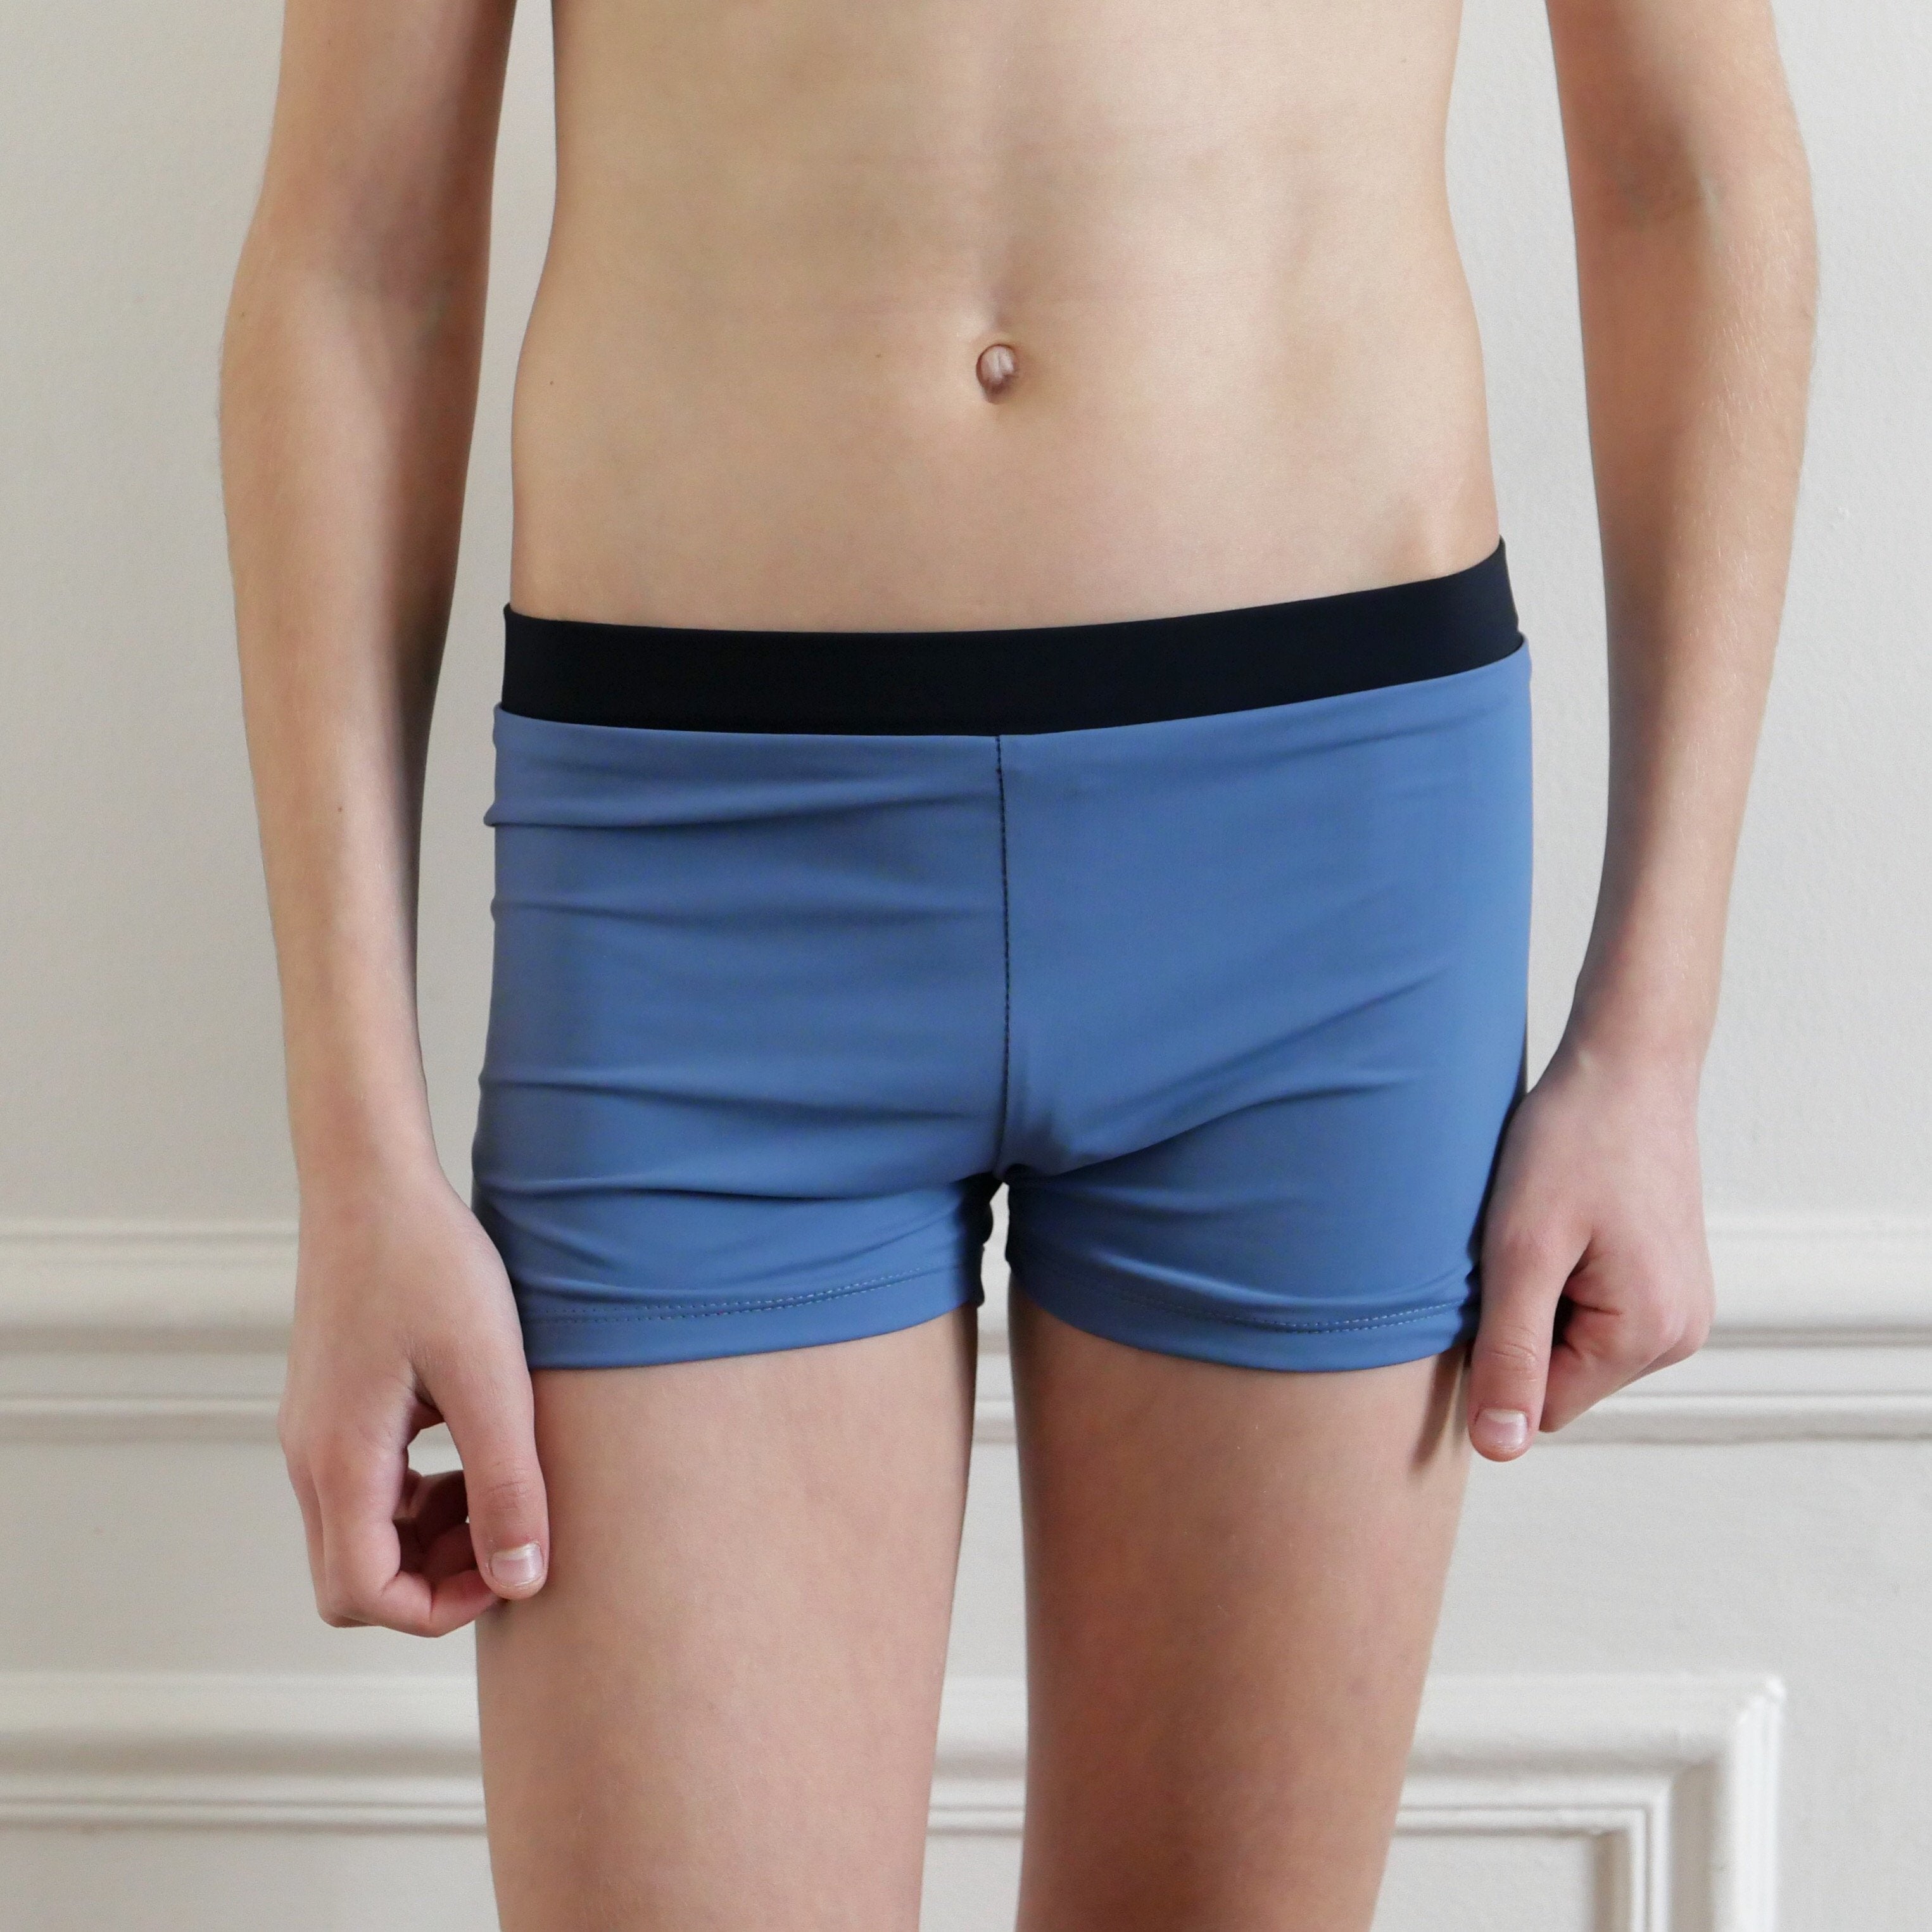 Ikatee -  Sebastien Underwear/ Swimsuit boys 3-12y - Paper Sewing Pattern